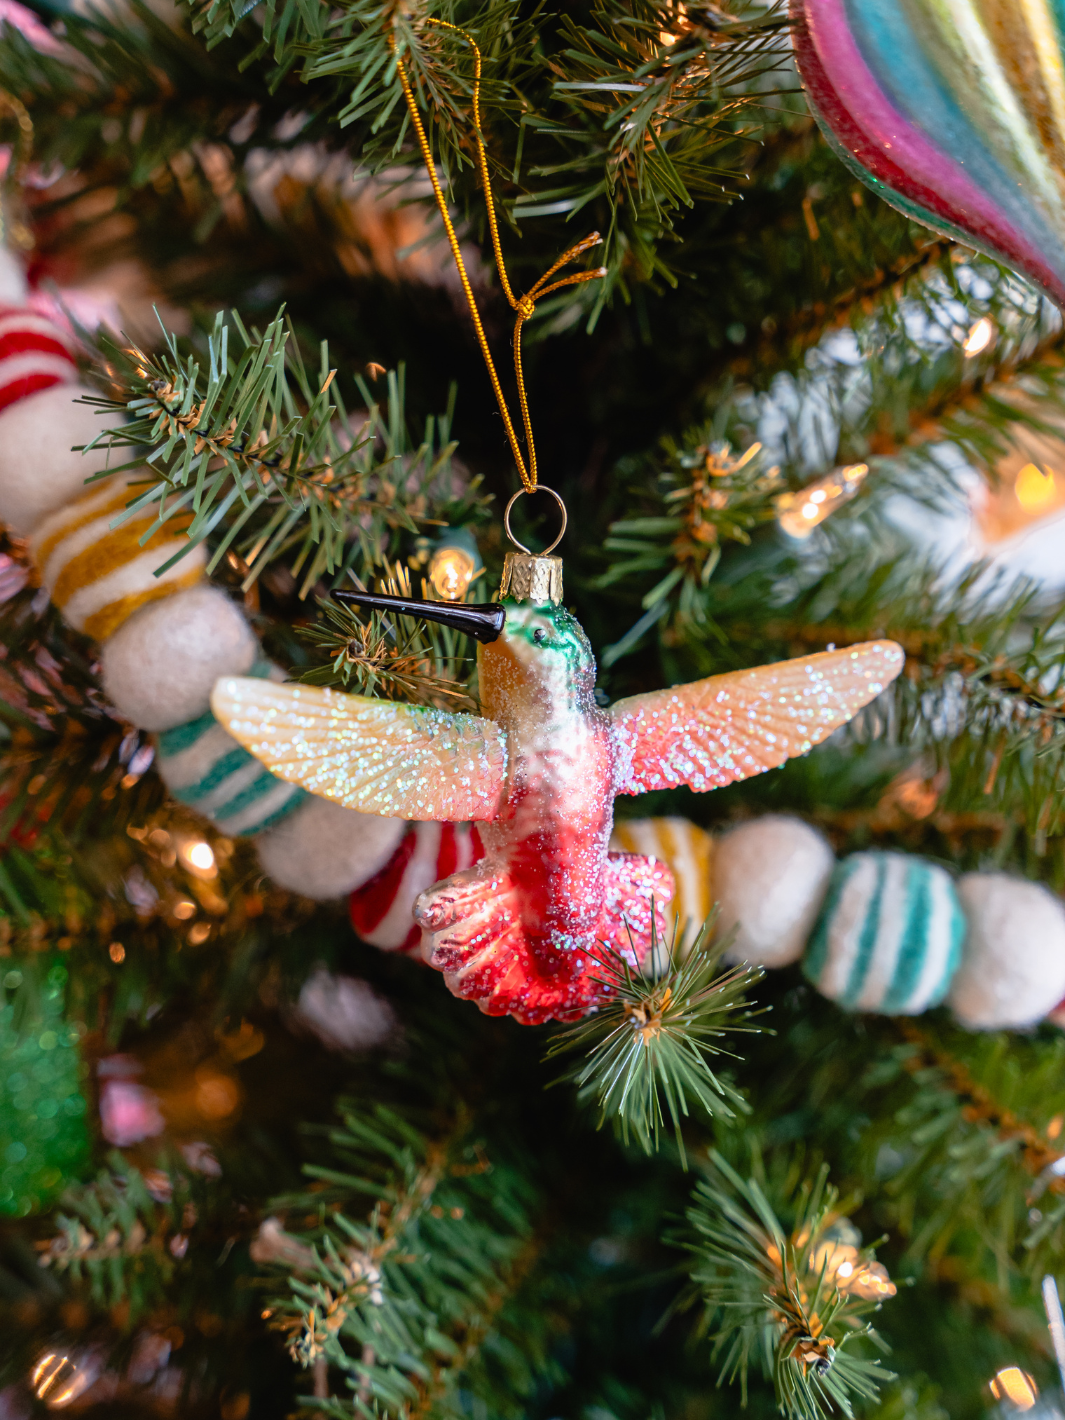 Red Glittered Hummingbird Ornament